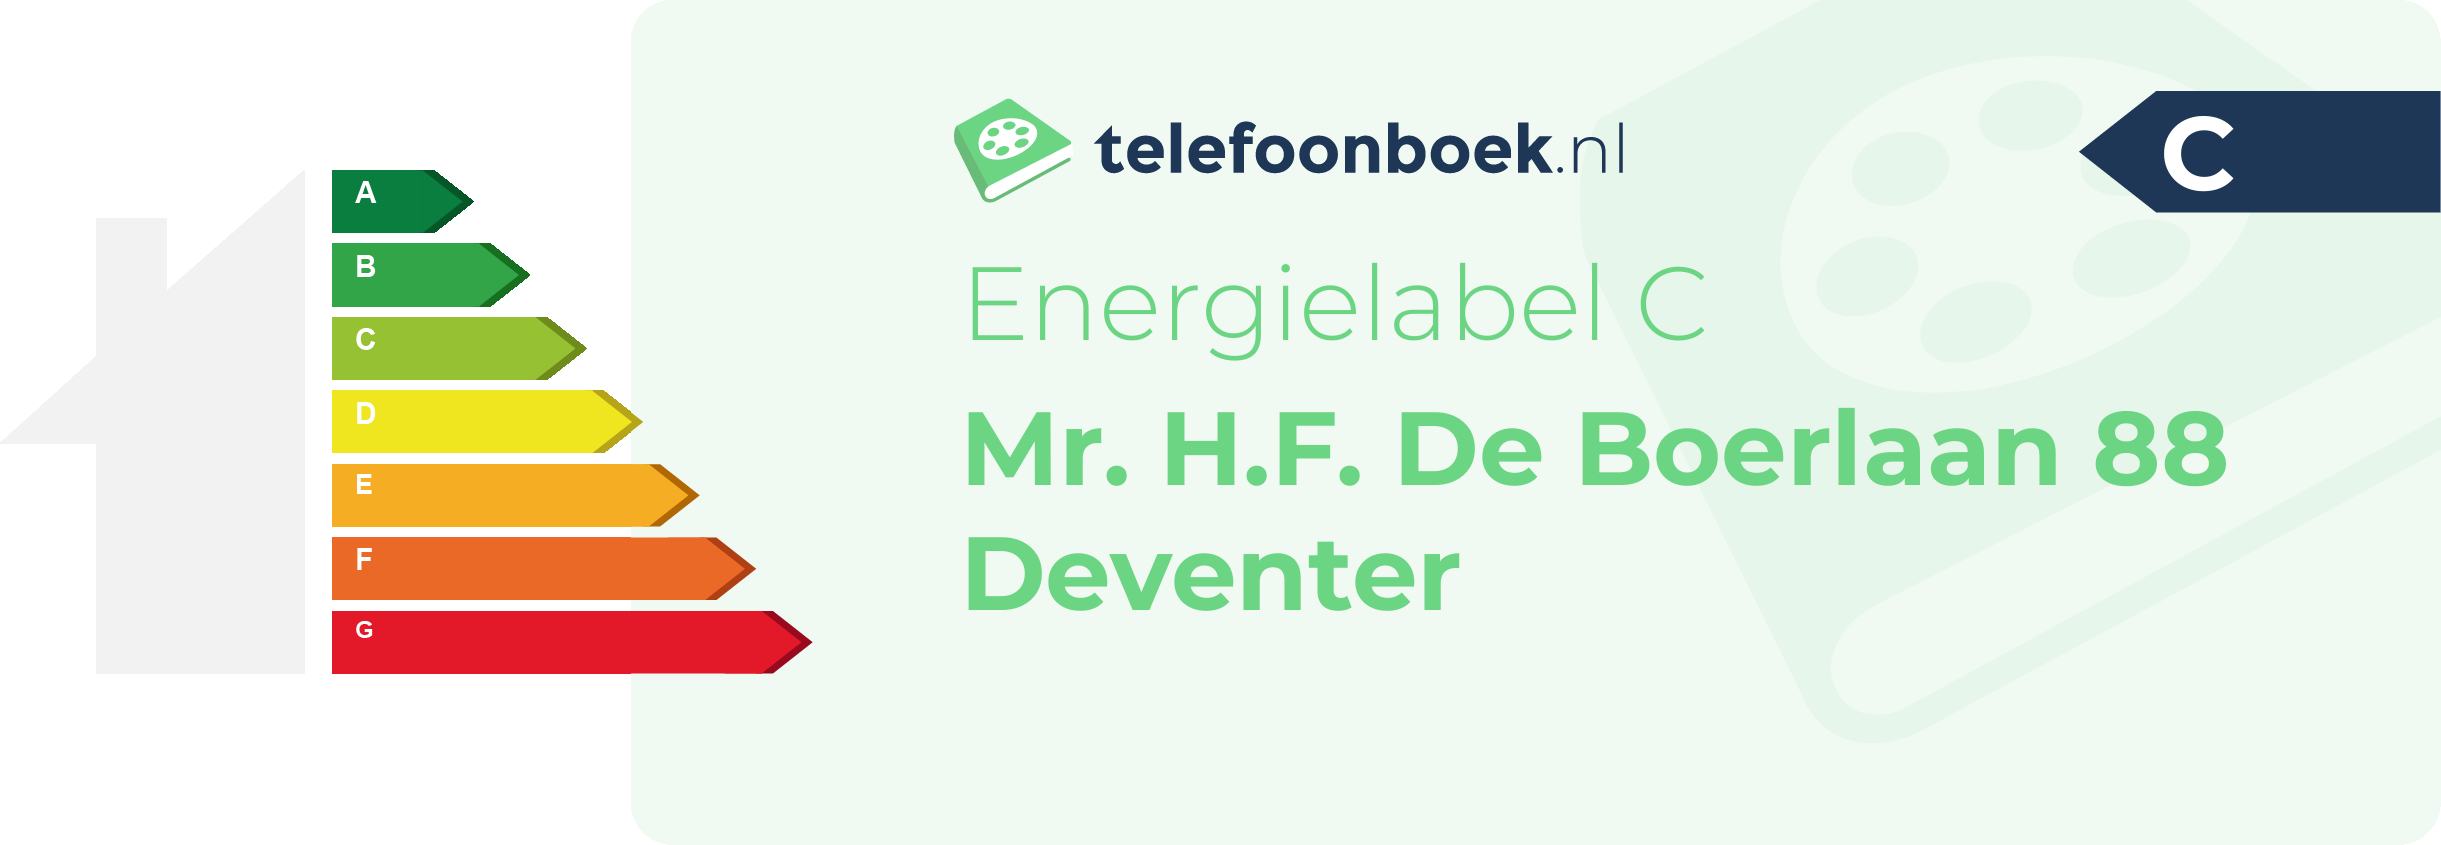 Energielabel Mr. H.F. De Boerlaan 88 Deventer